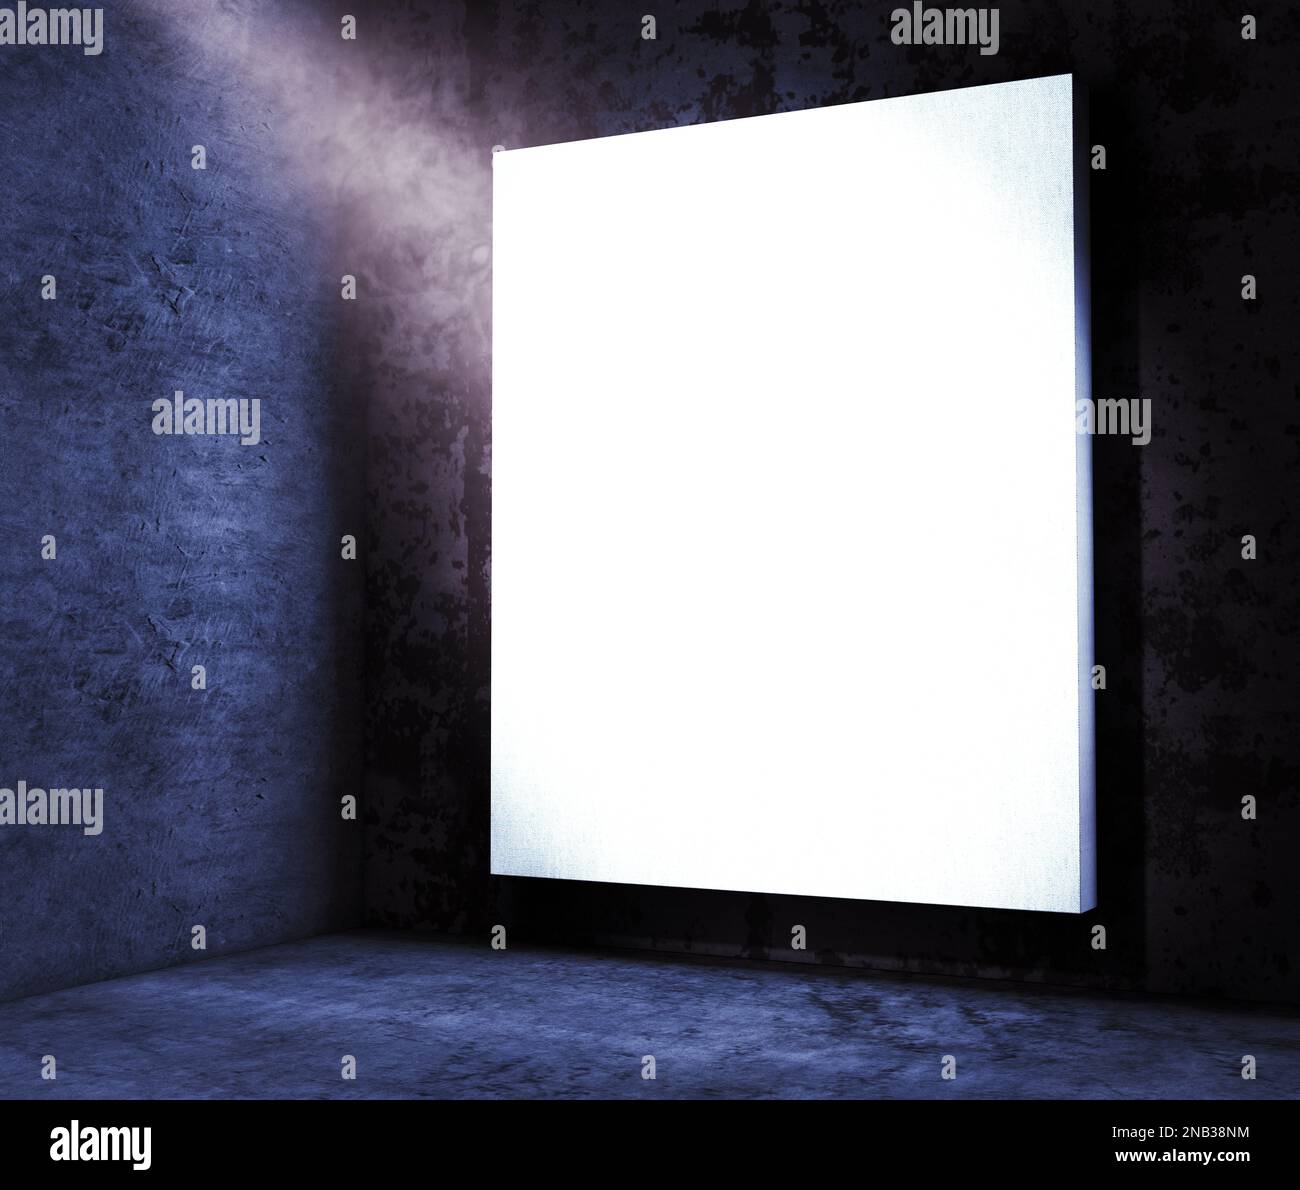 Fond d'affiche dans le noir de la nuit illuminé par des projecteurs pour des annonces de divertissement et des concerts de musique. Banque D'Images